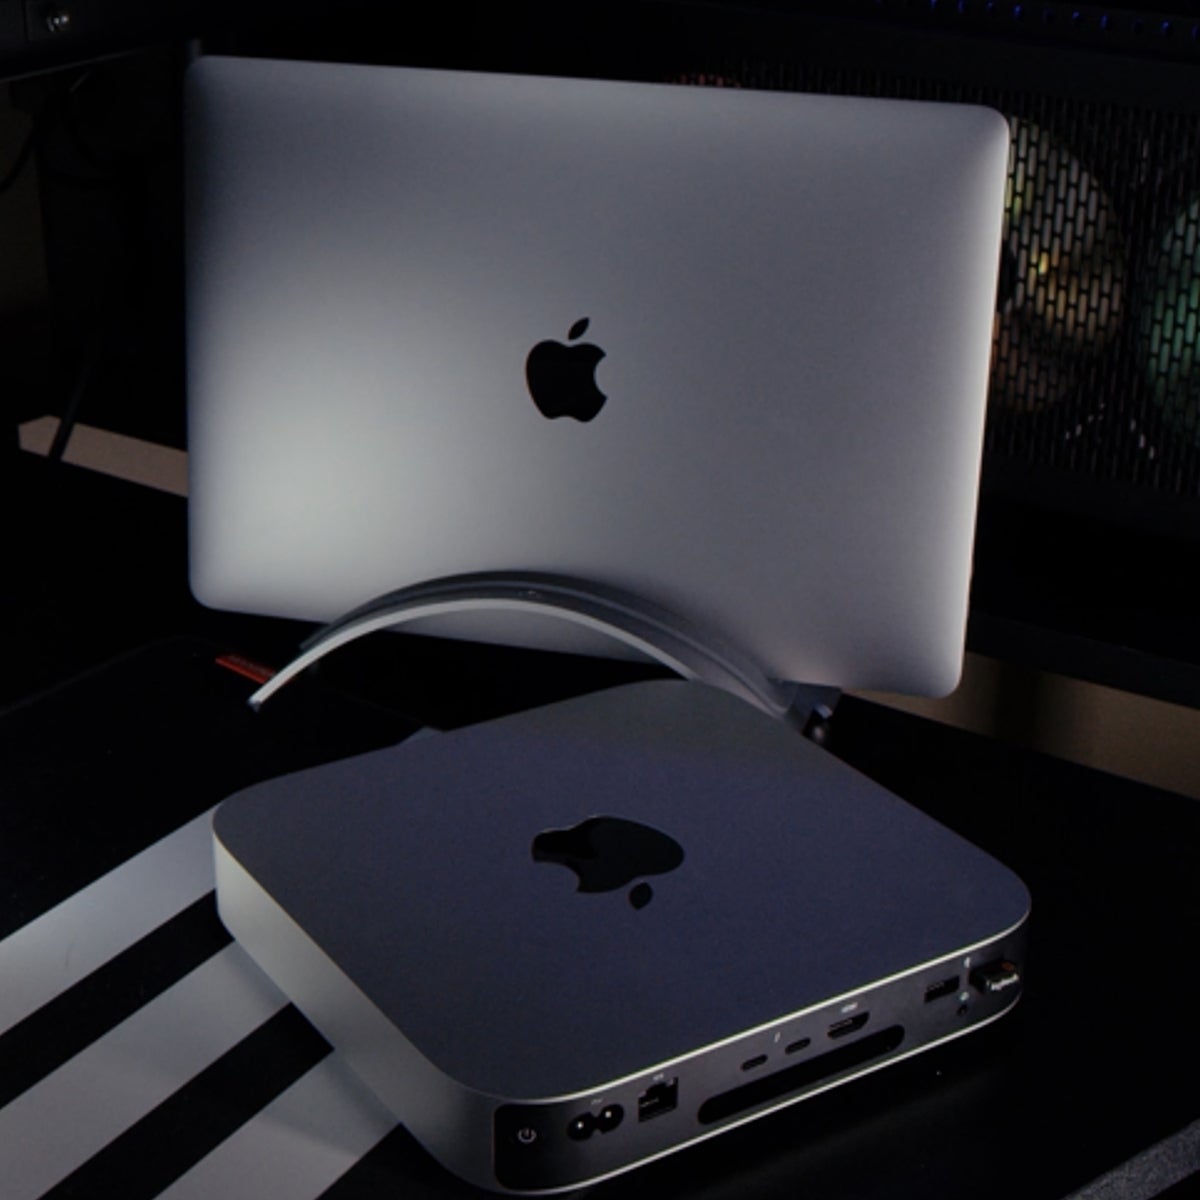 MacBook, Mac mini